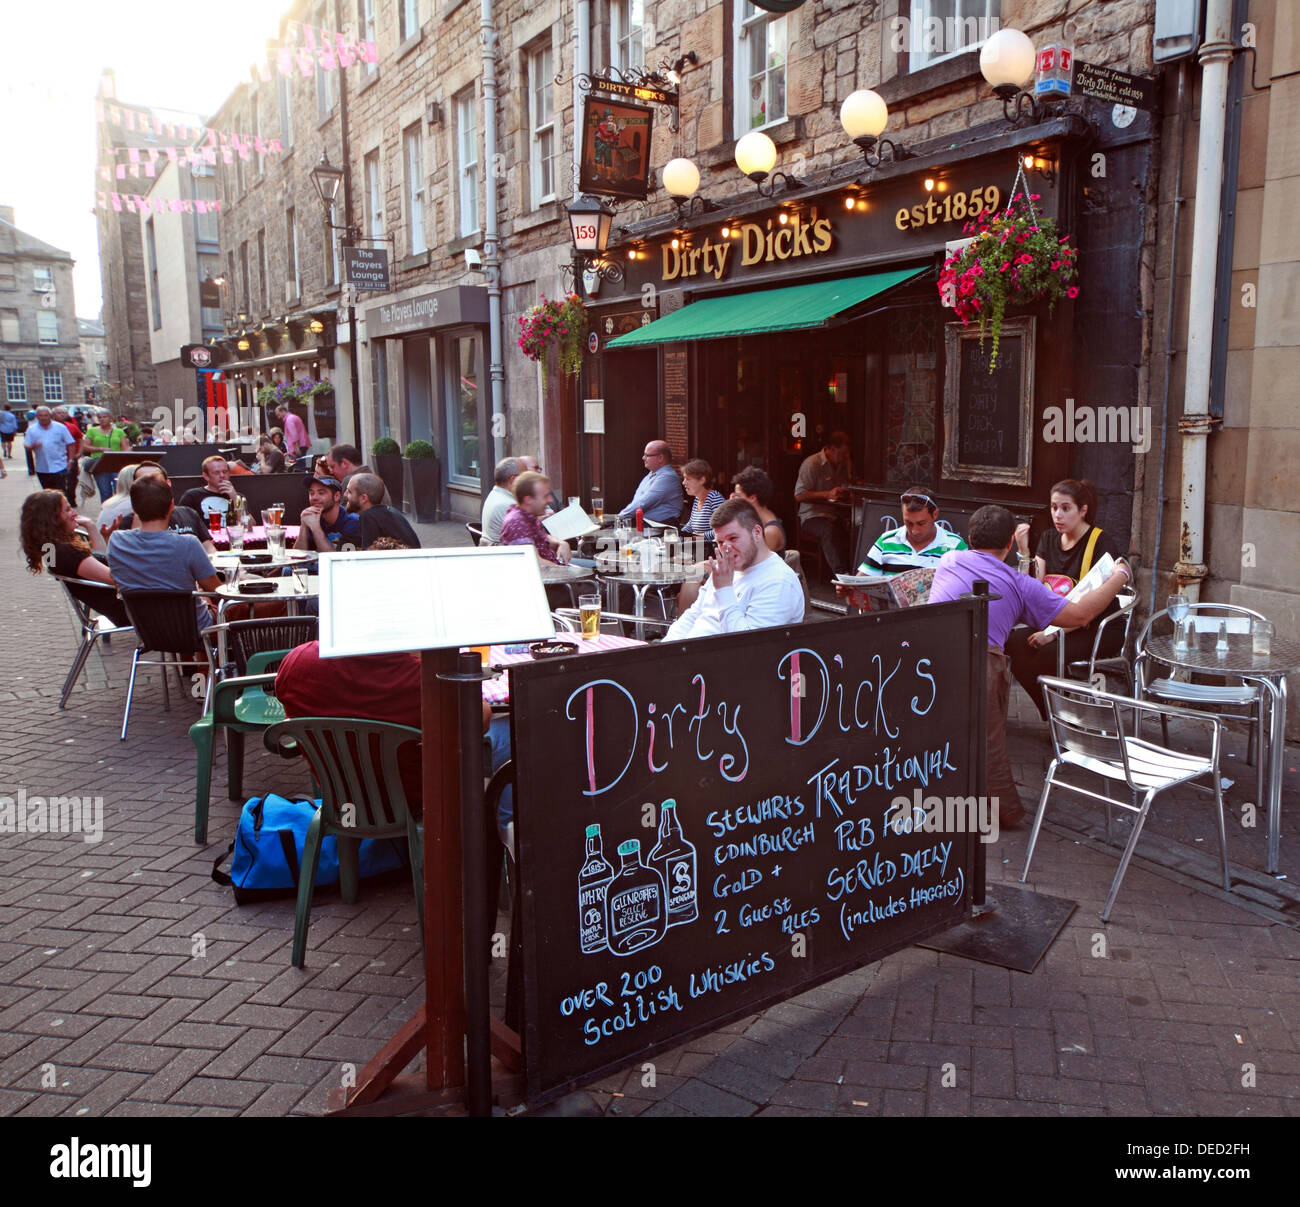 Dirty Dicks Pub Rose nouvelle ville d'Édimbourg en Écosse St Banque D'Images